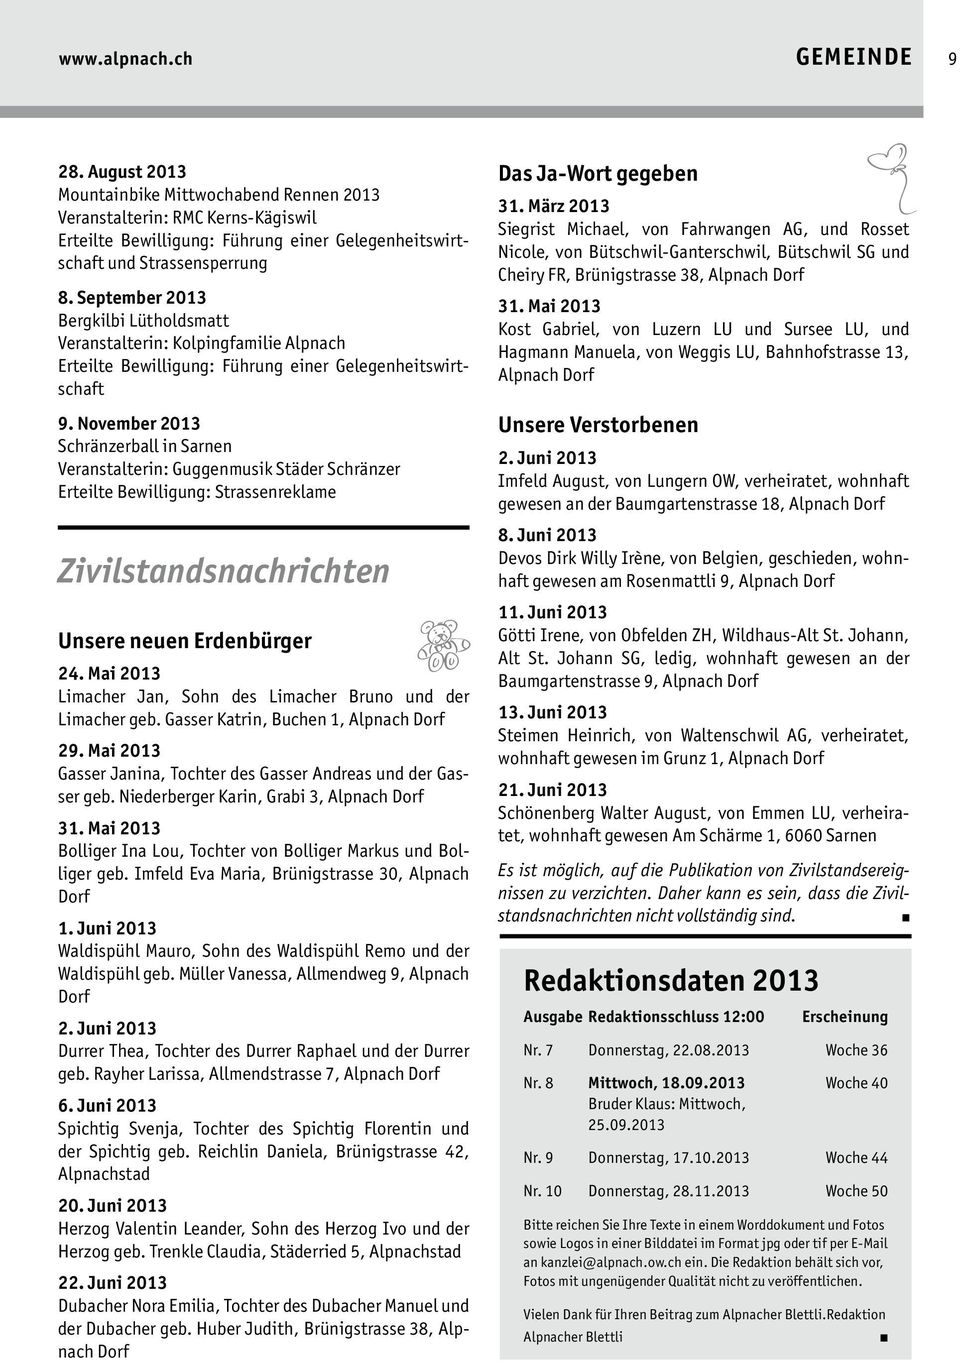 November 2013 Schränzerball in Sarnen Veranstalterin: Guggenmusik Städer Schränzer Erteilte Bewilligung: Strassenreklame Zivilstandsnachrichten Unsere neuen Erdenbürger 24.